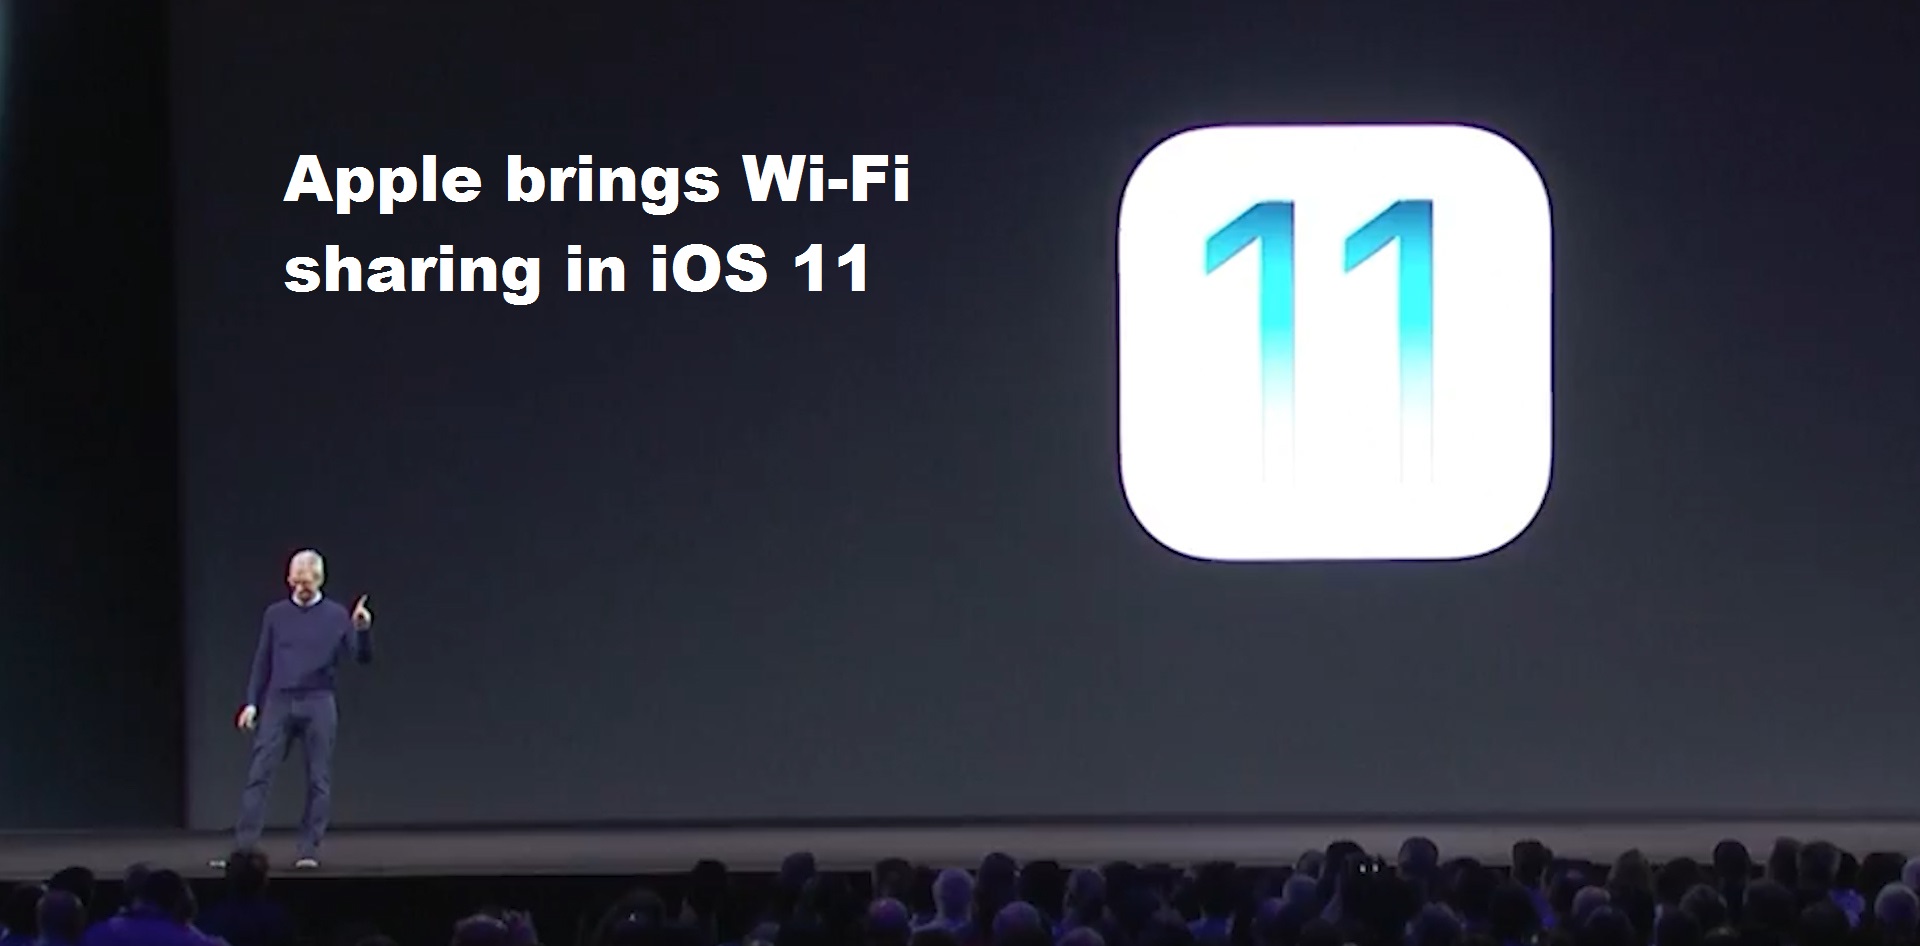 Apple brings Wi-Fi sharing in iOS 11